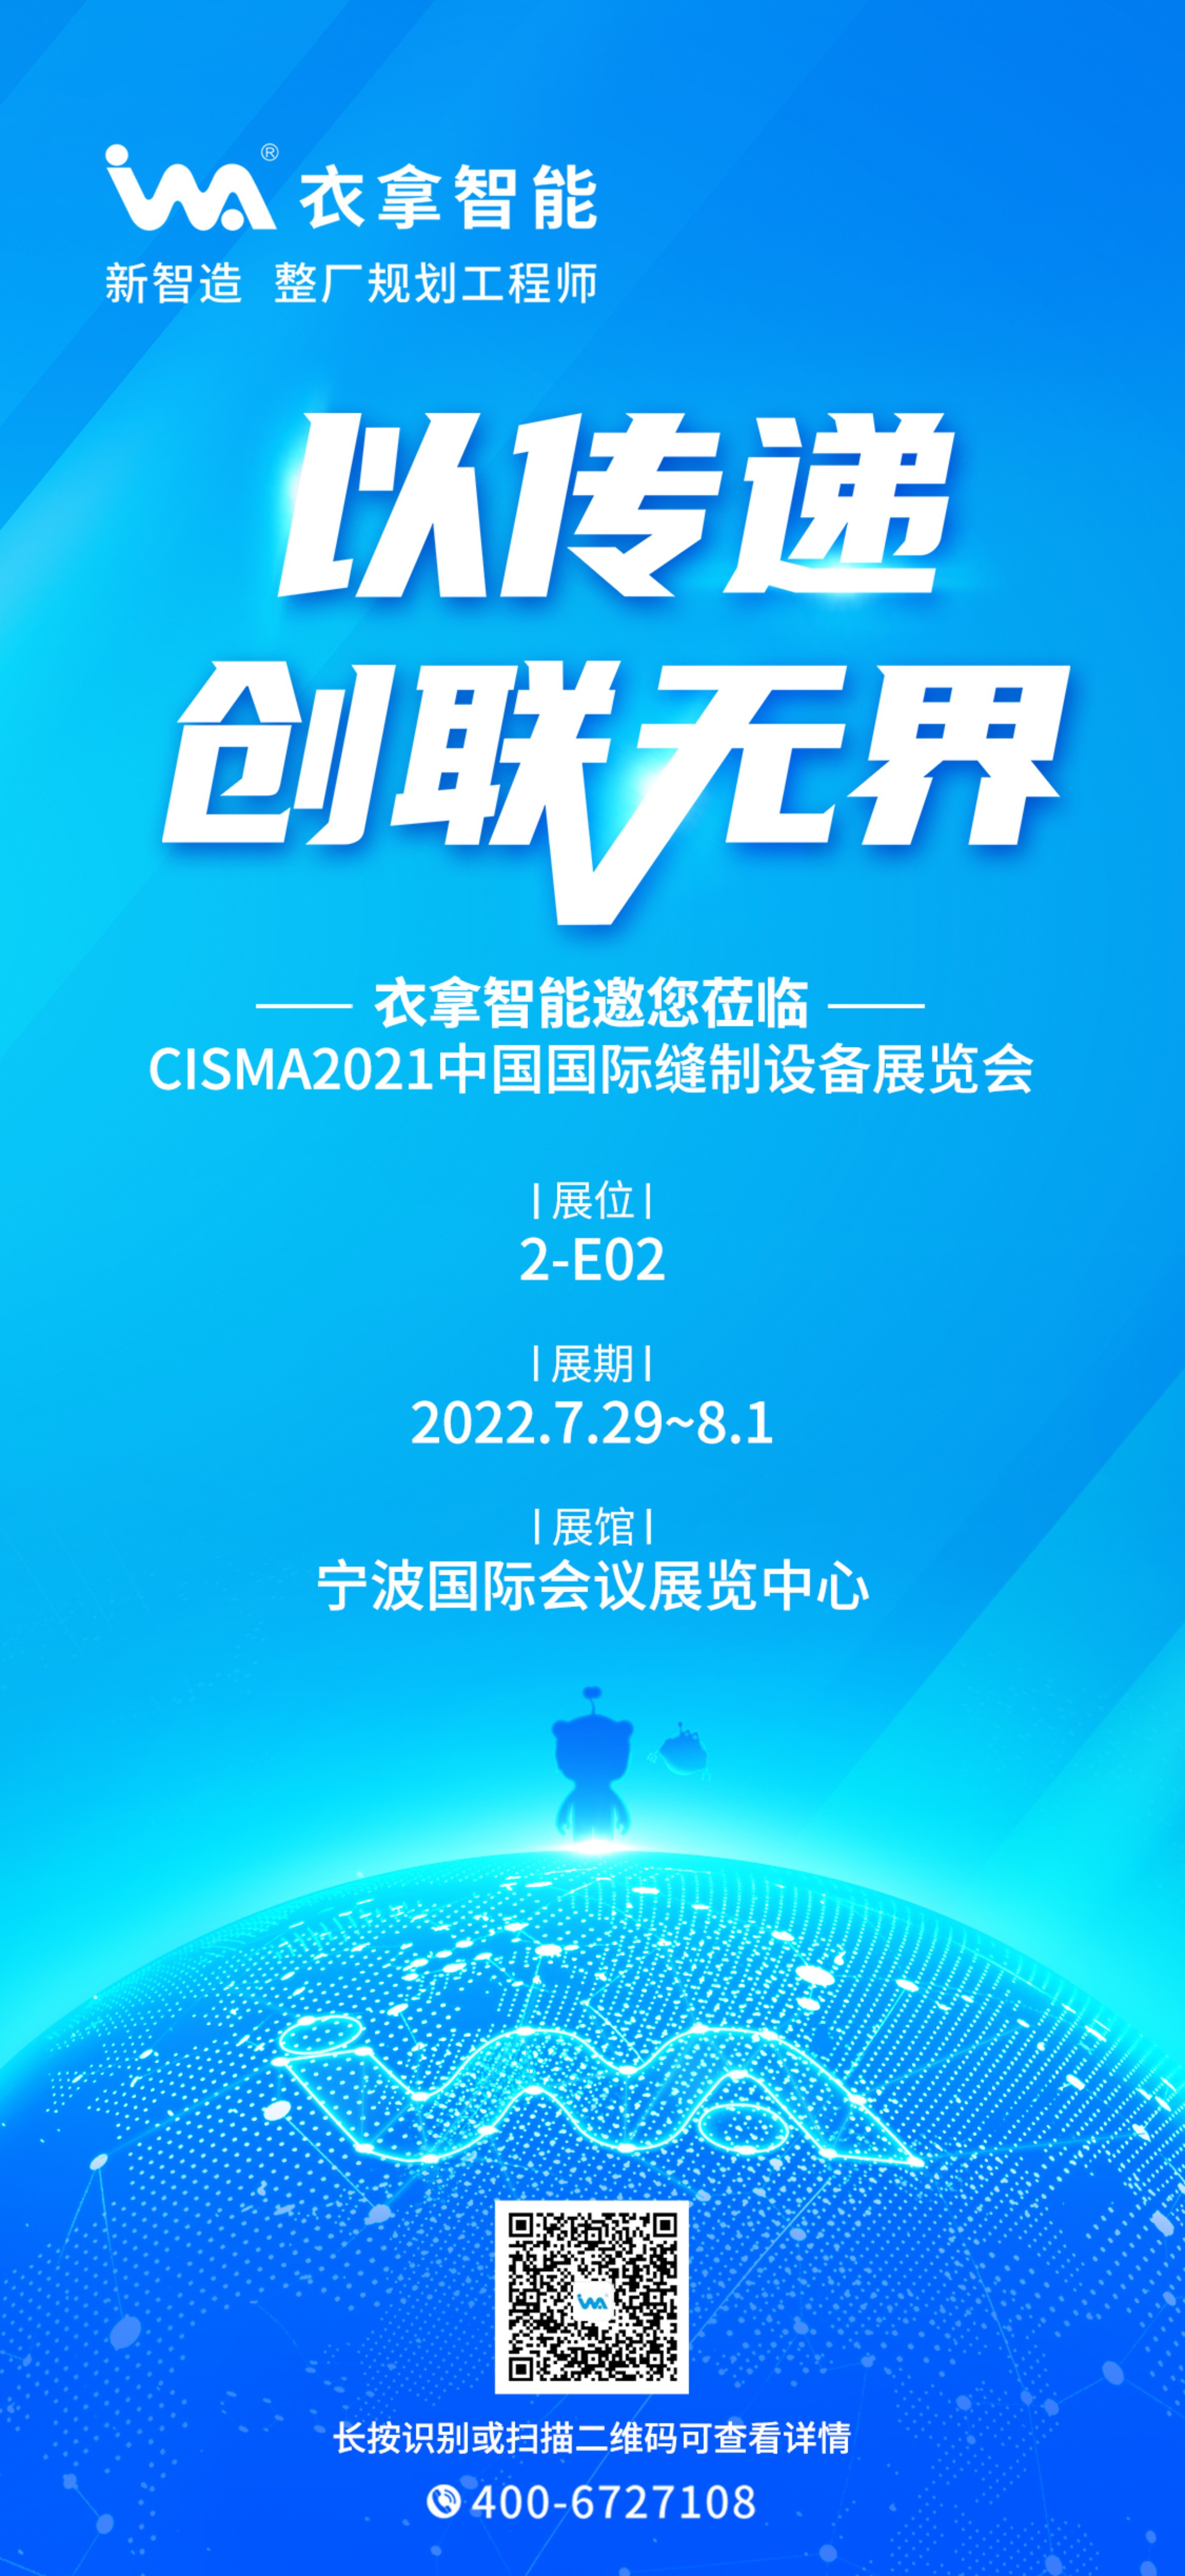 银河娱乐澳门娱乐网站 | 与您相约CISMA2021中国国际缝制设备展览会